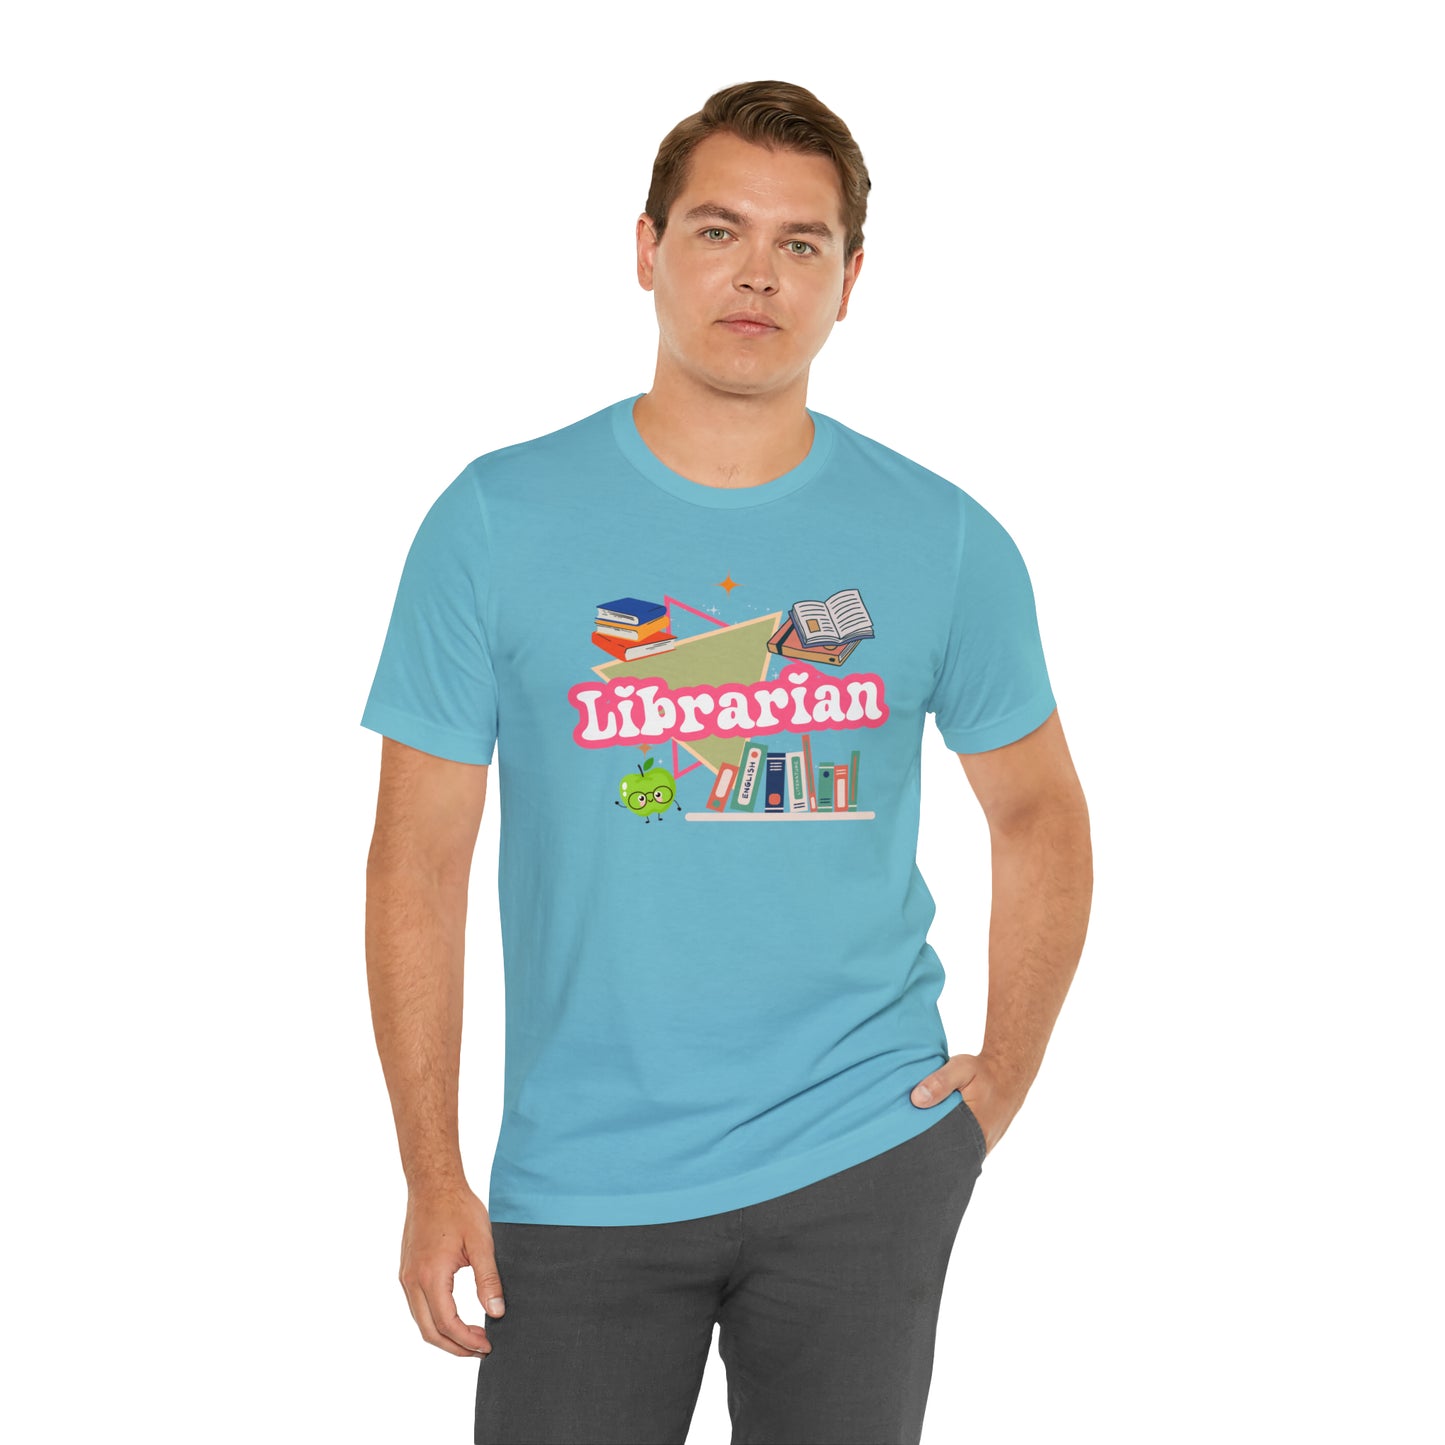 Librarian shirt, 90s shirt, 90s teacher shirt, colorful school secretary shirt, colorful school shirt, T544